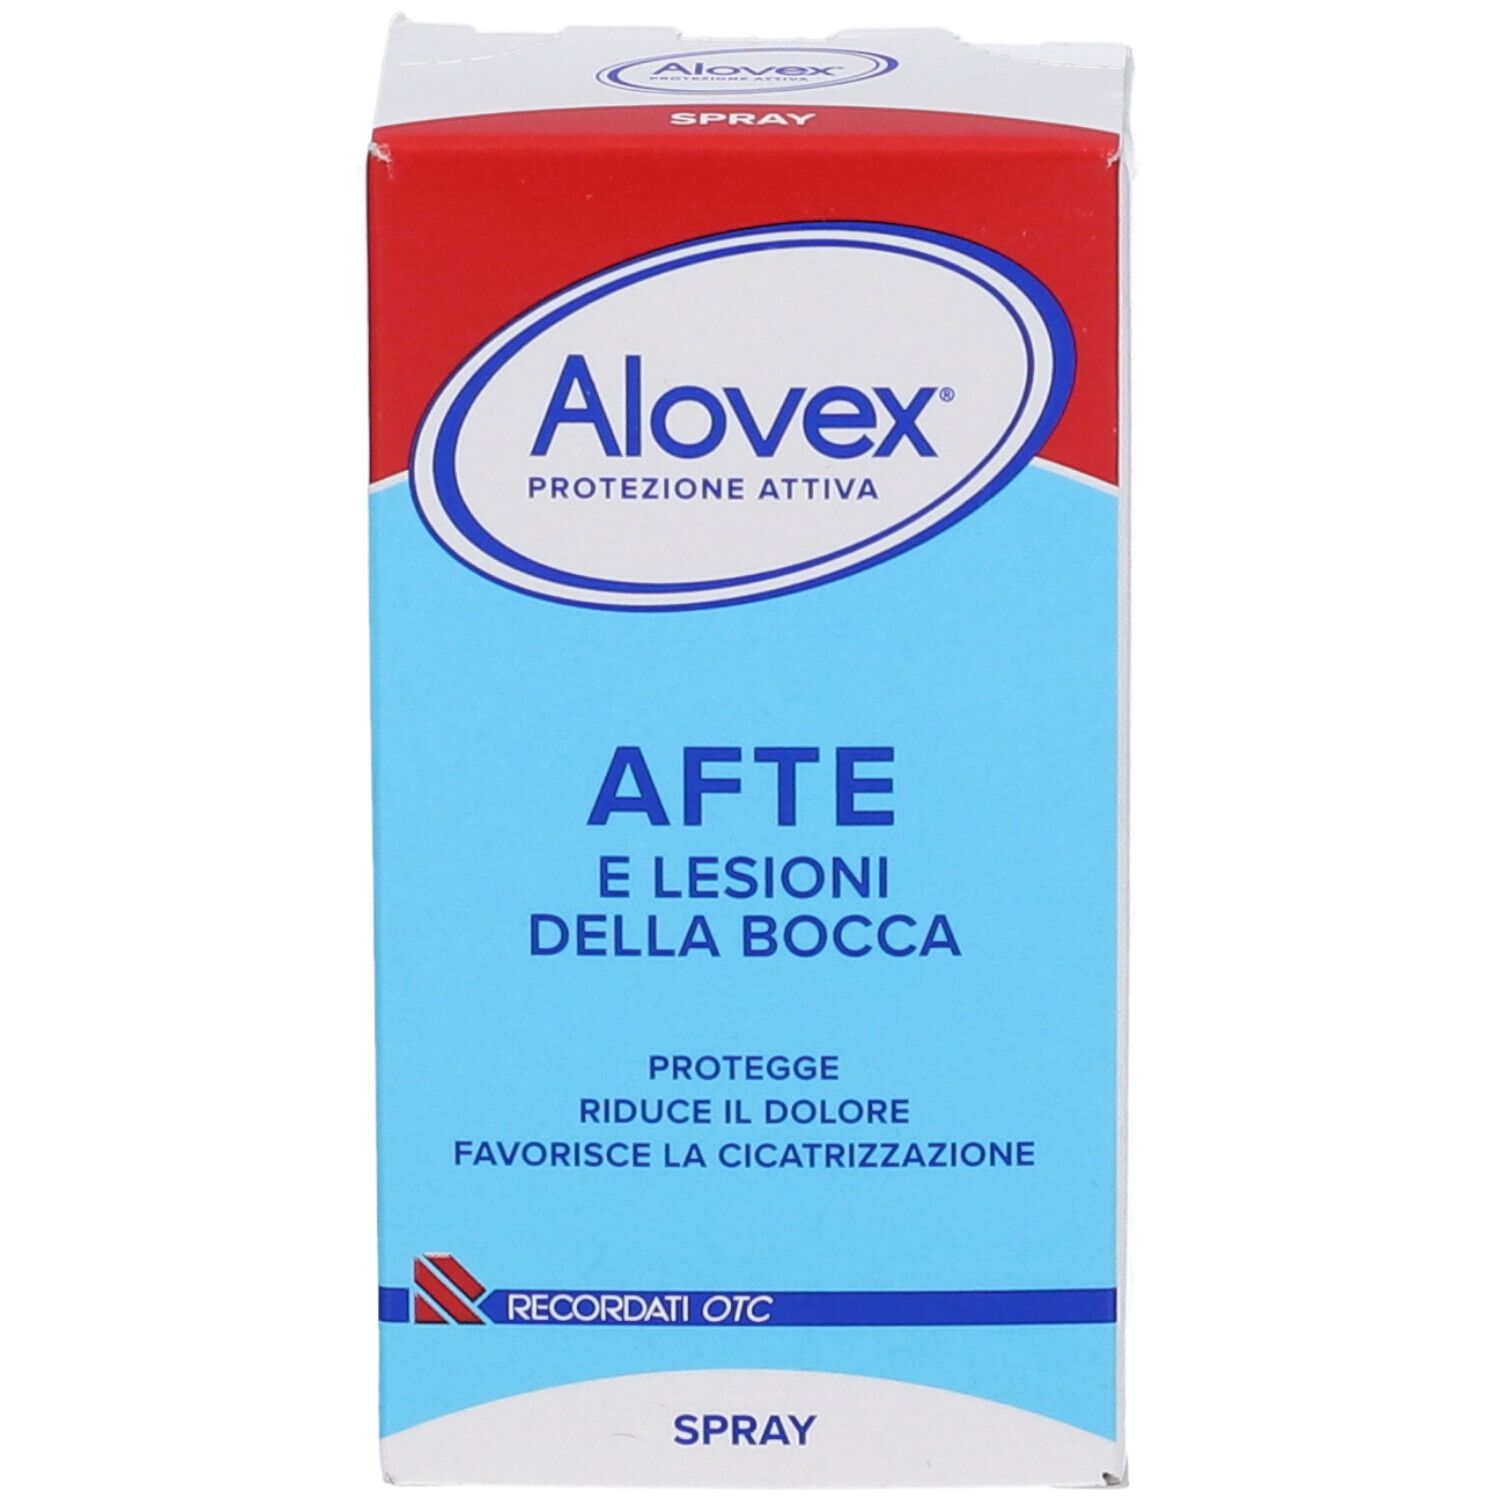 Alovex® Protezione attiva Spray